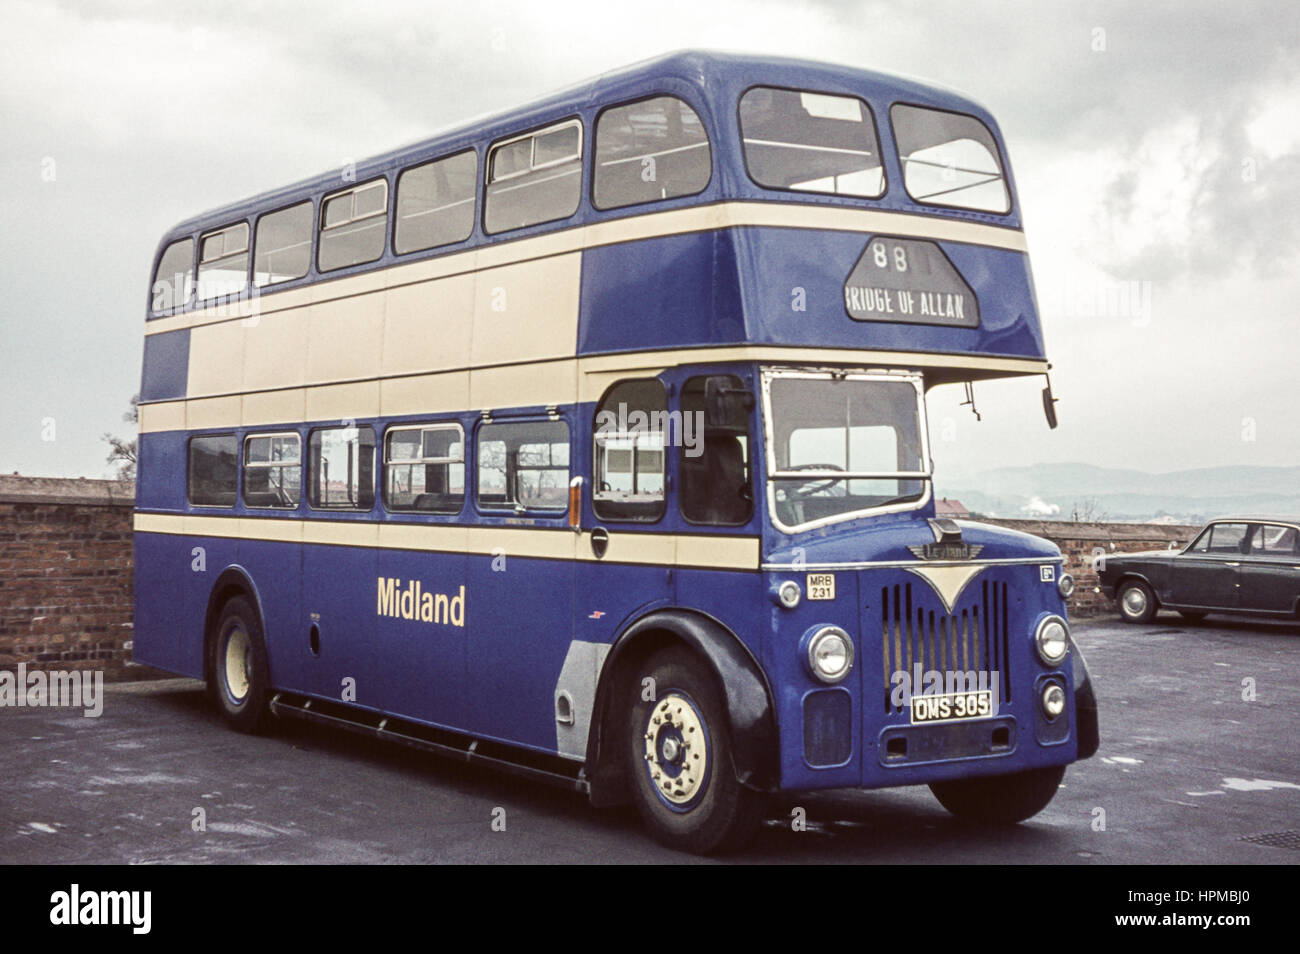 Escocia, Reino Unido - 1973: Vintage imagen del bus. Alexander (Midland) Leyland MRB231 (número de registro 305 de OMS). Foto de stock